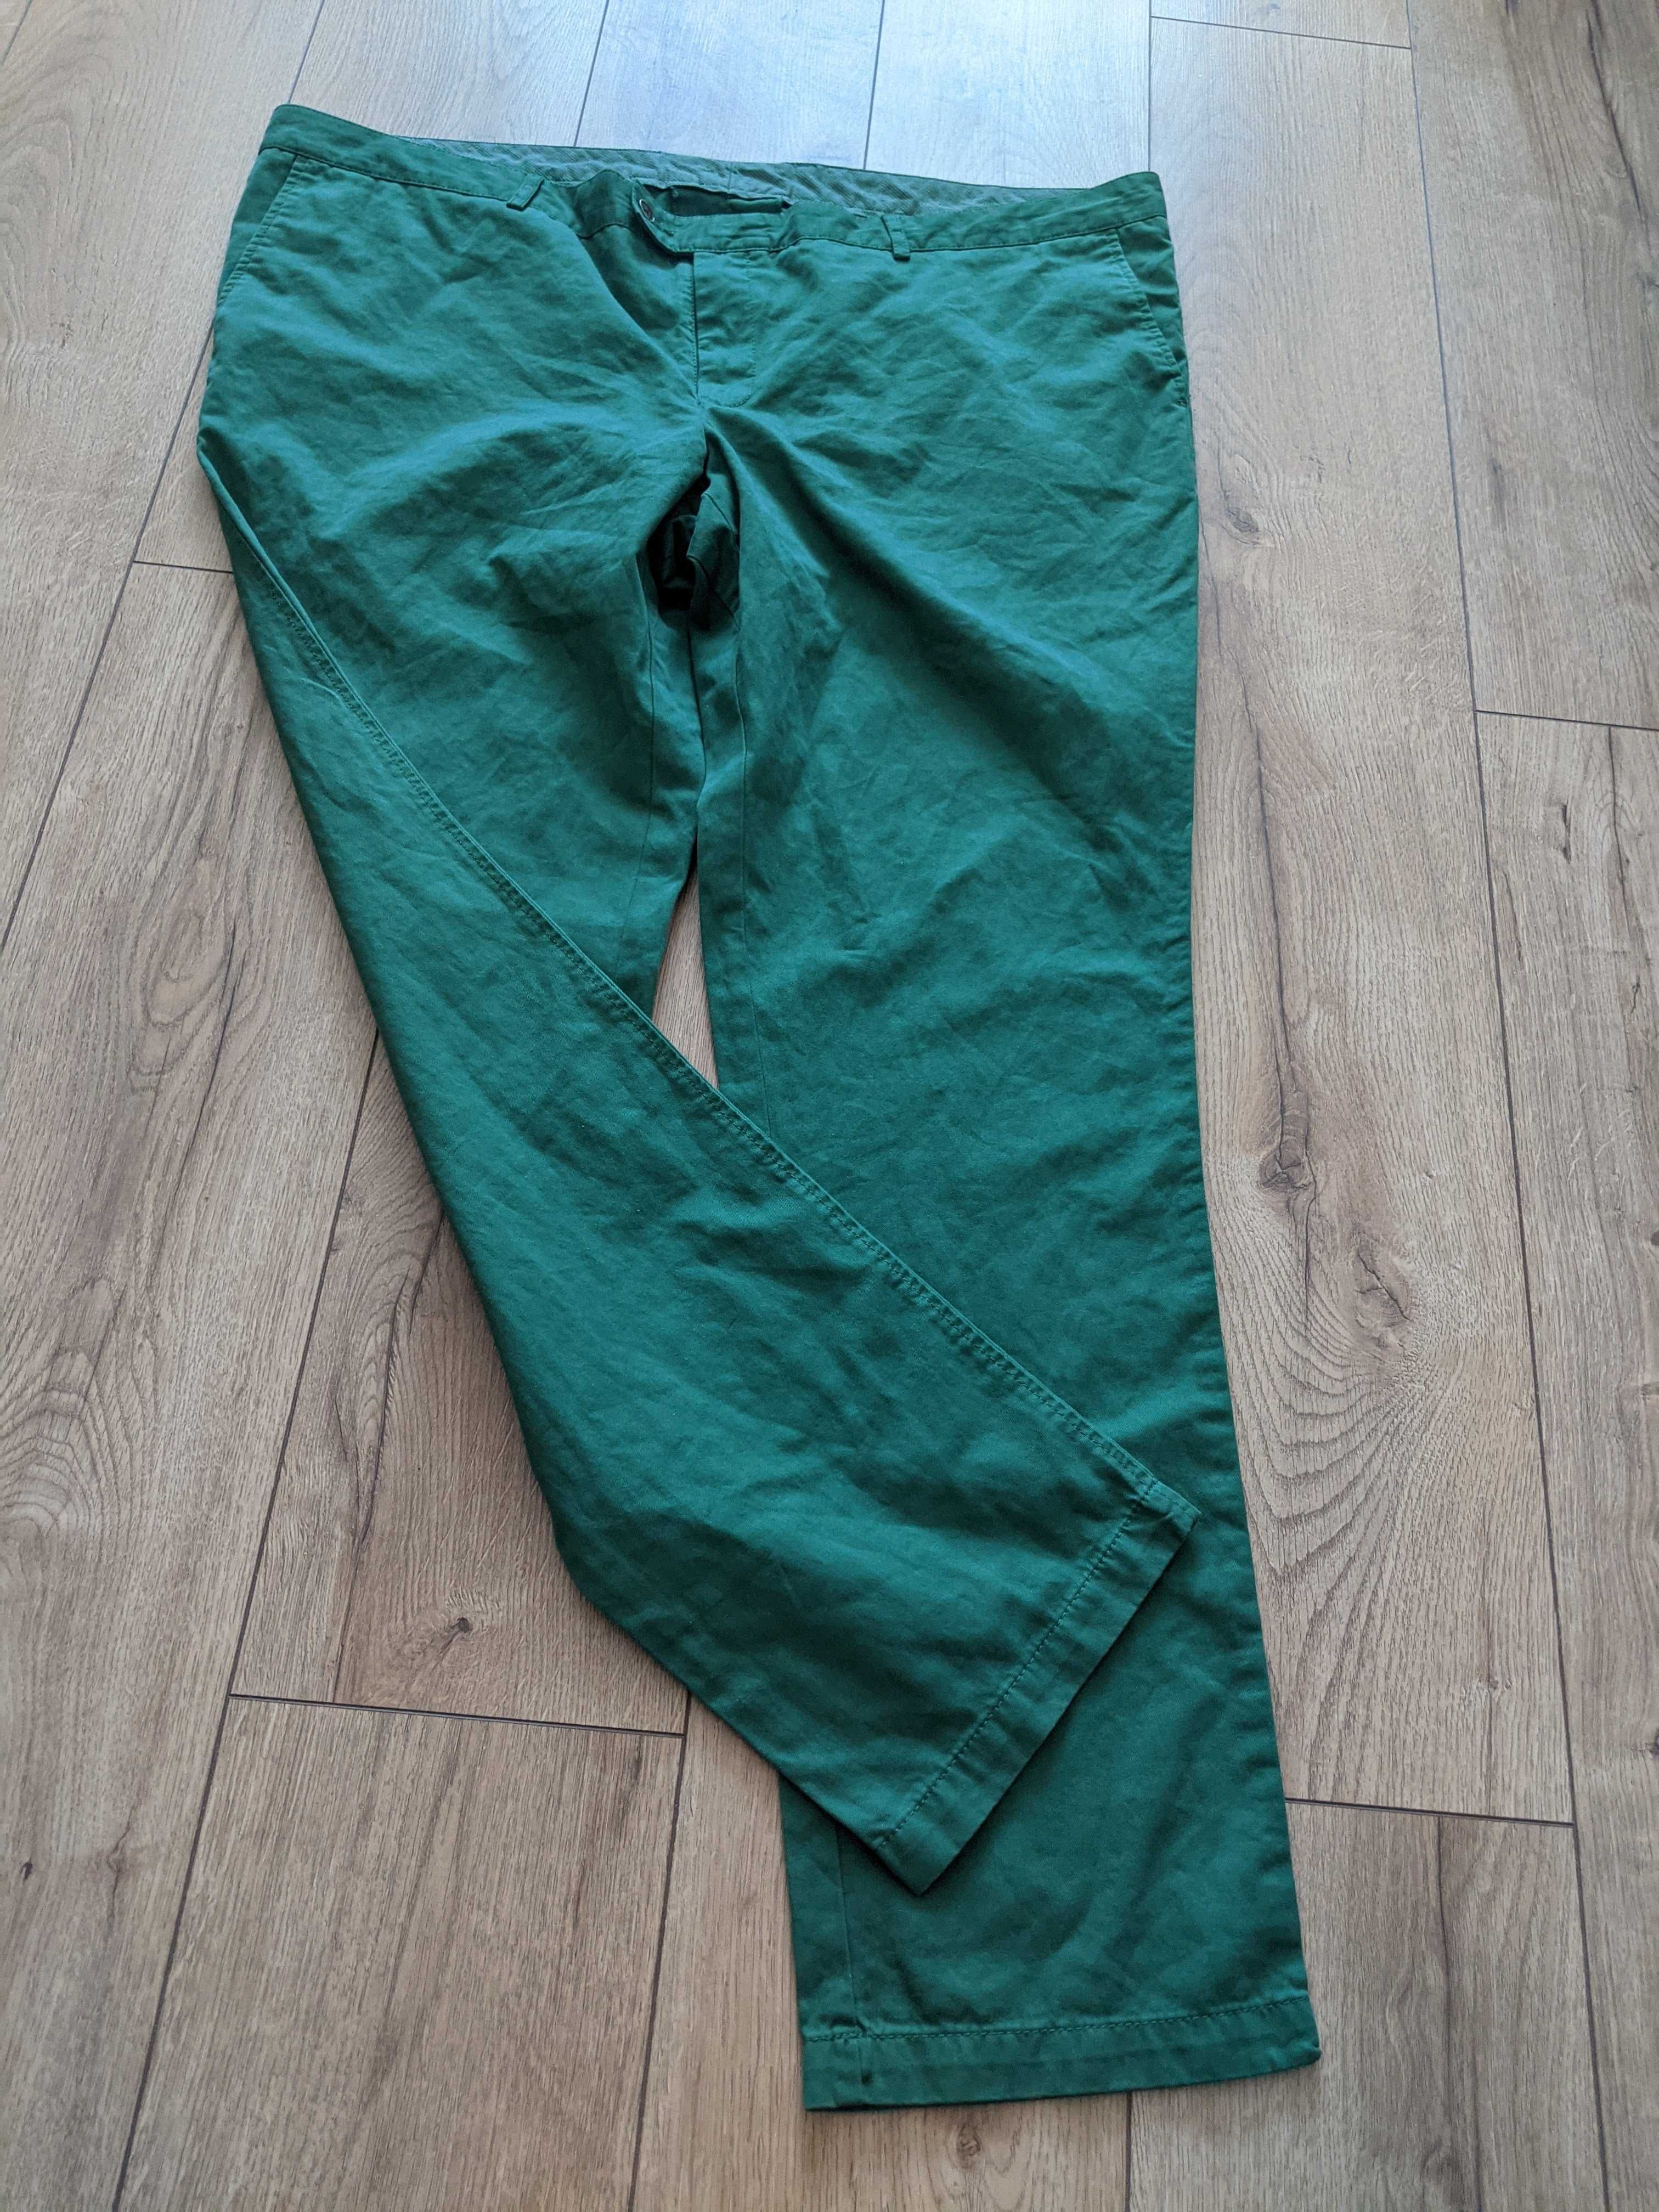 Spodnie męskie 6XL zielone bawełna jNowe pas120